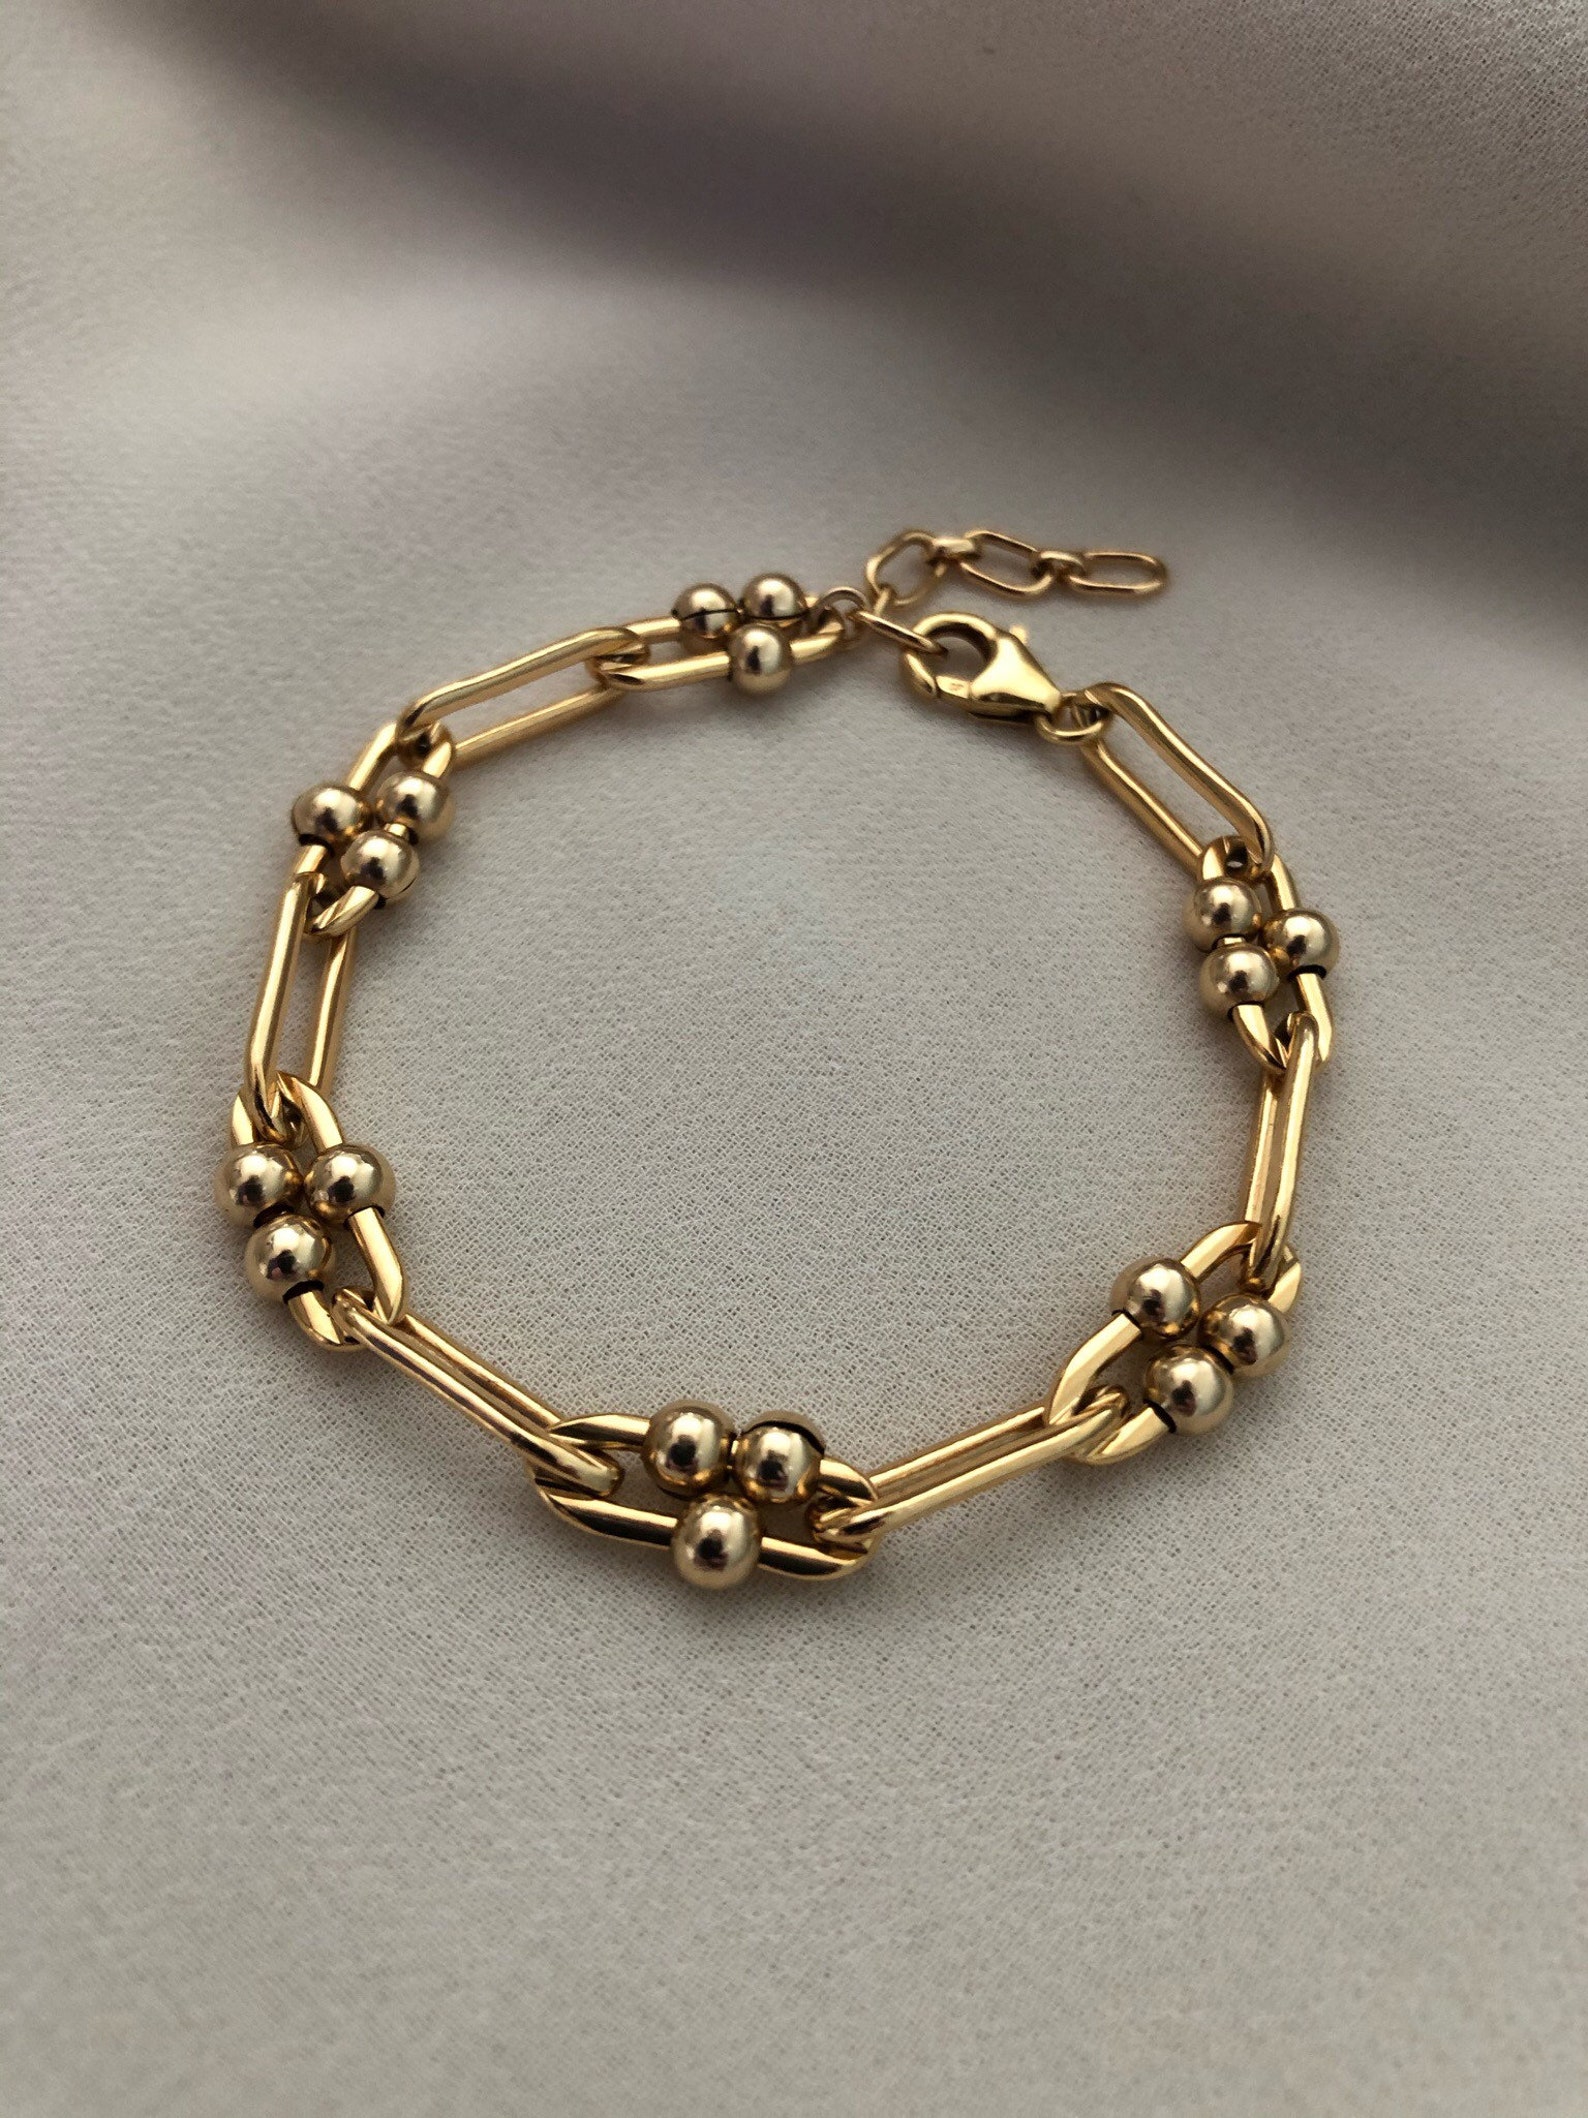 GIGI Gold Link Bracelet 14kt Gold Filled Long Link Chain - Etsy